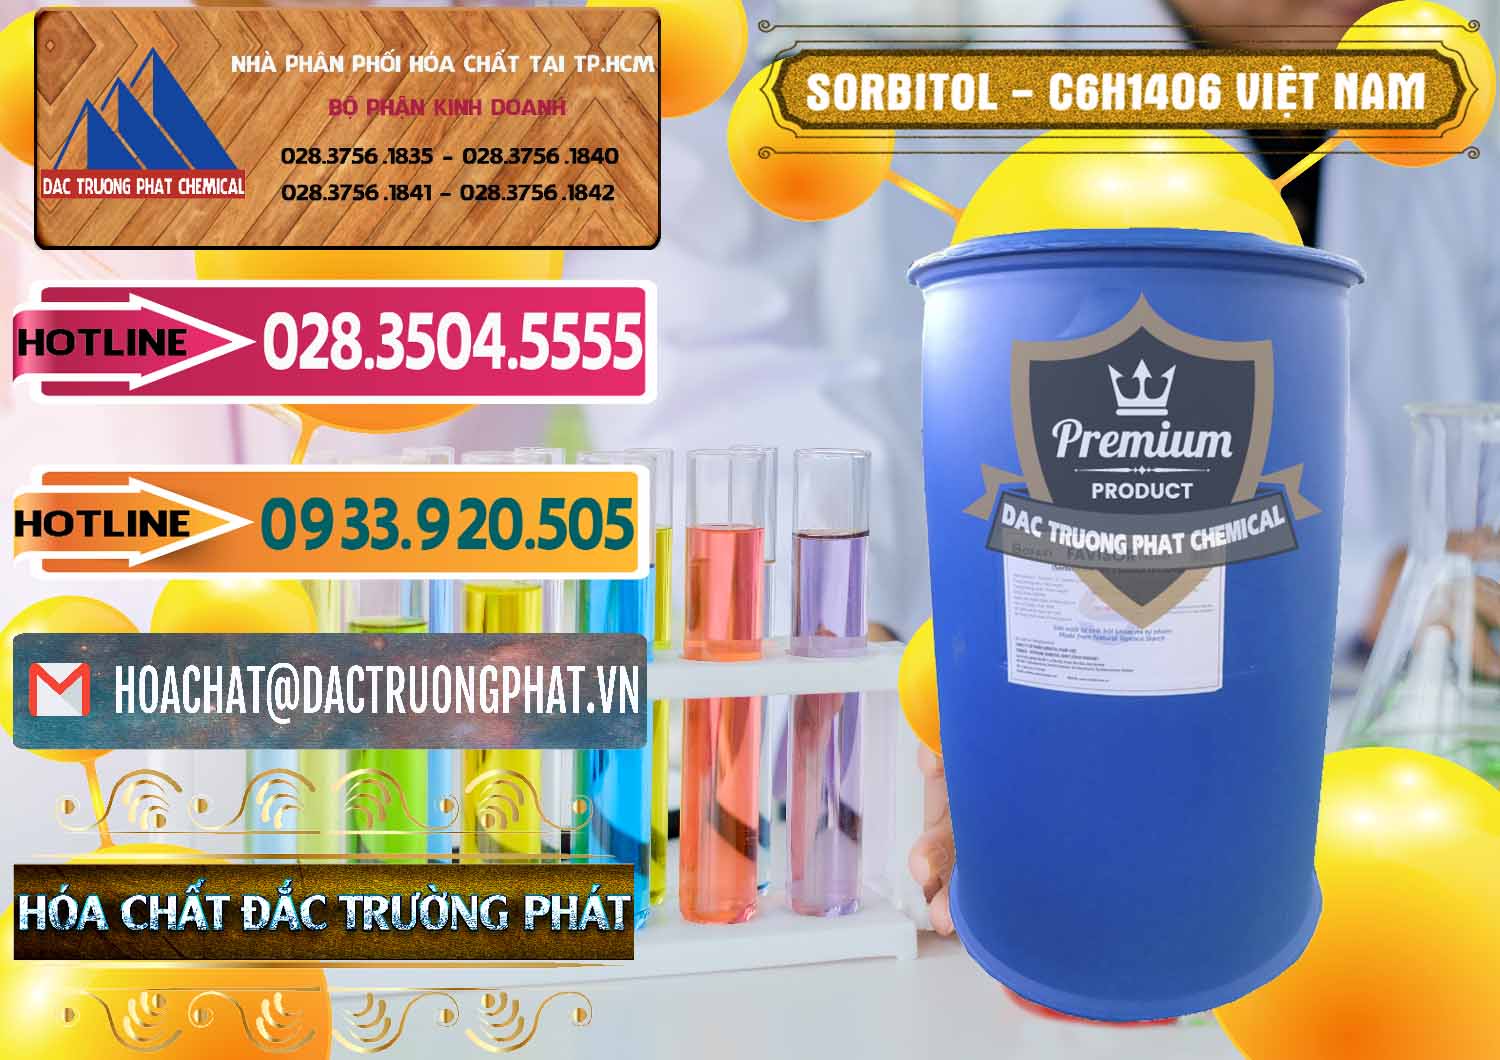 Nhà phân phối và kinh doanh Sorbitol - C6H14O6 Lỏng 70% Food Grade Việt Nam - 0438 - Nơi chuyên cung ứng và bán hóa chất tại TP.HCM - dactruongphat.vn